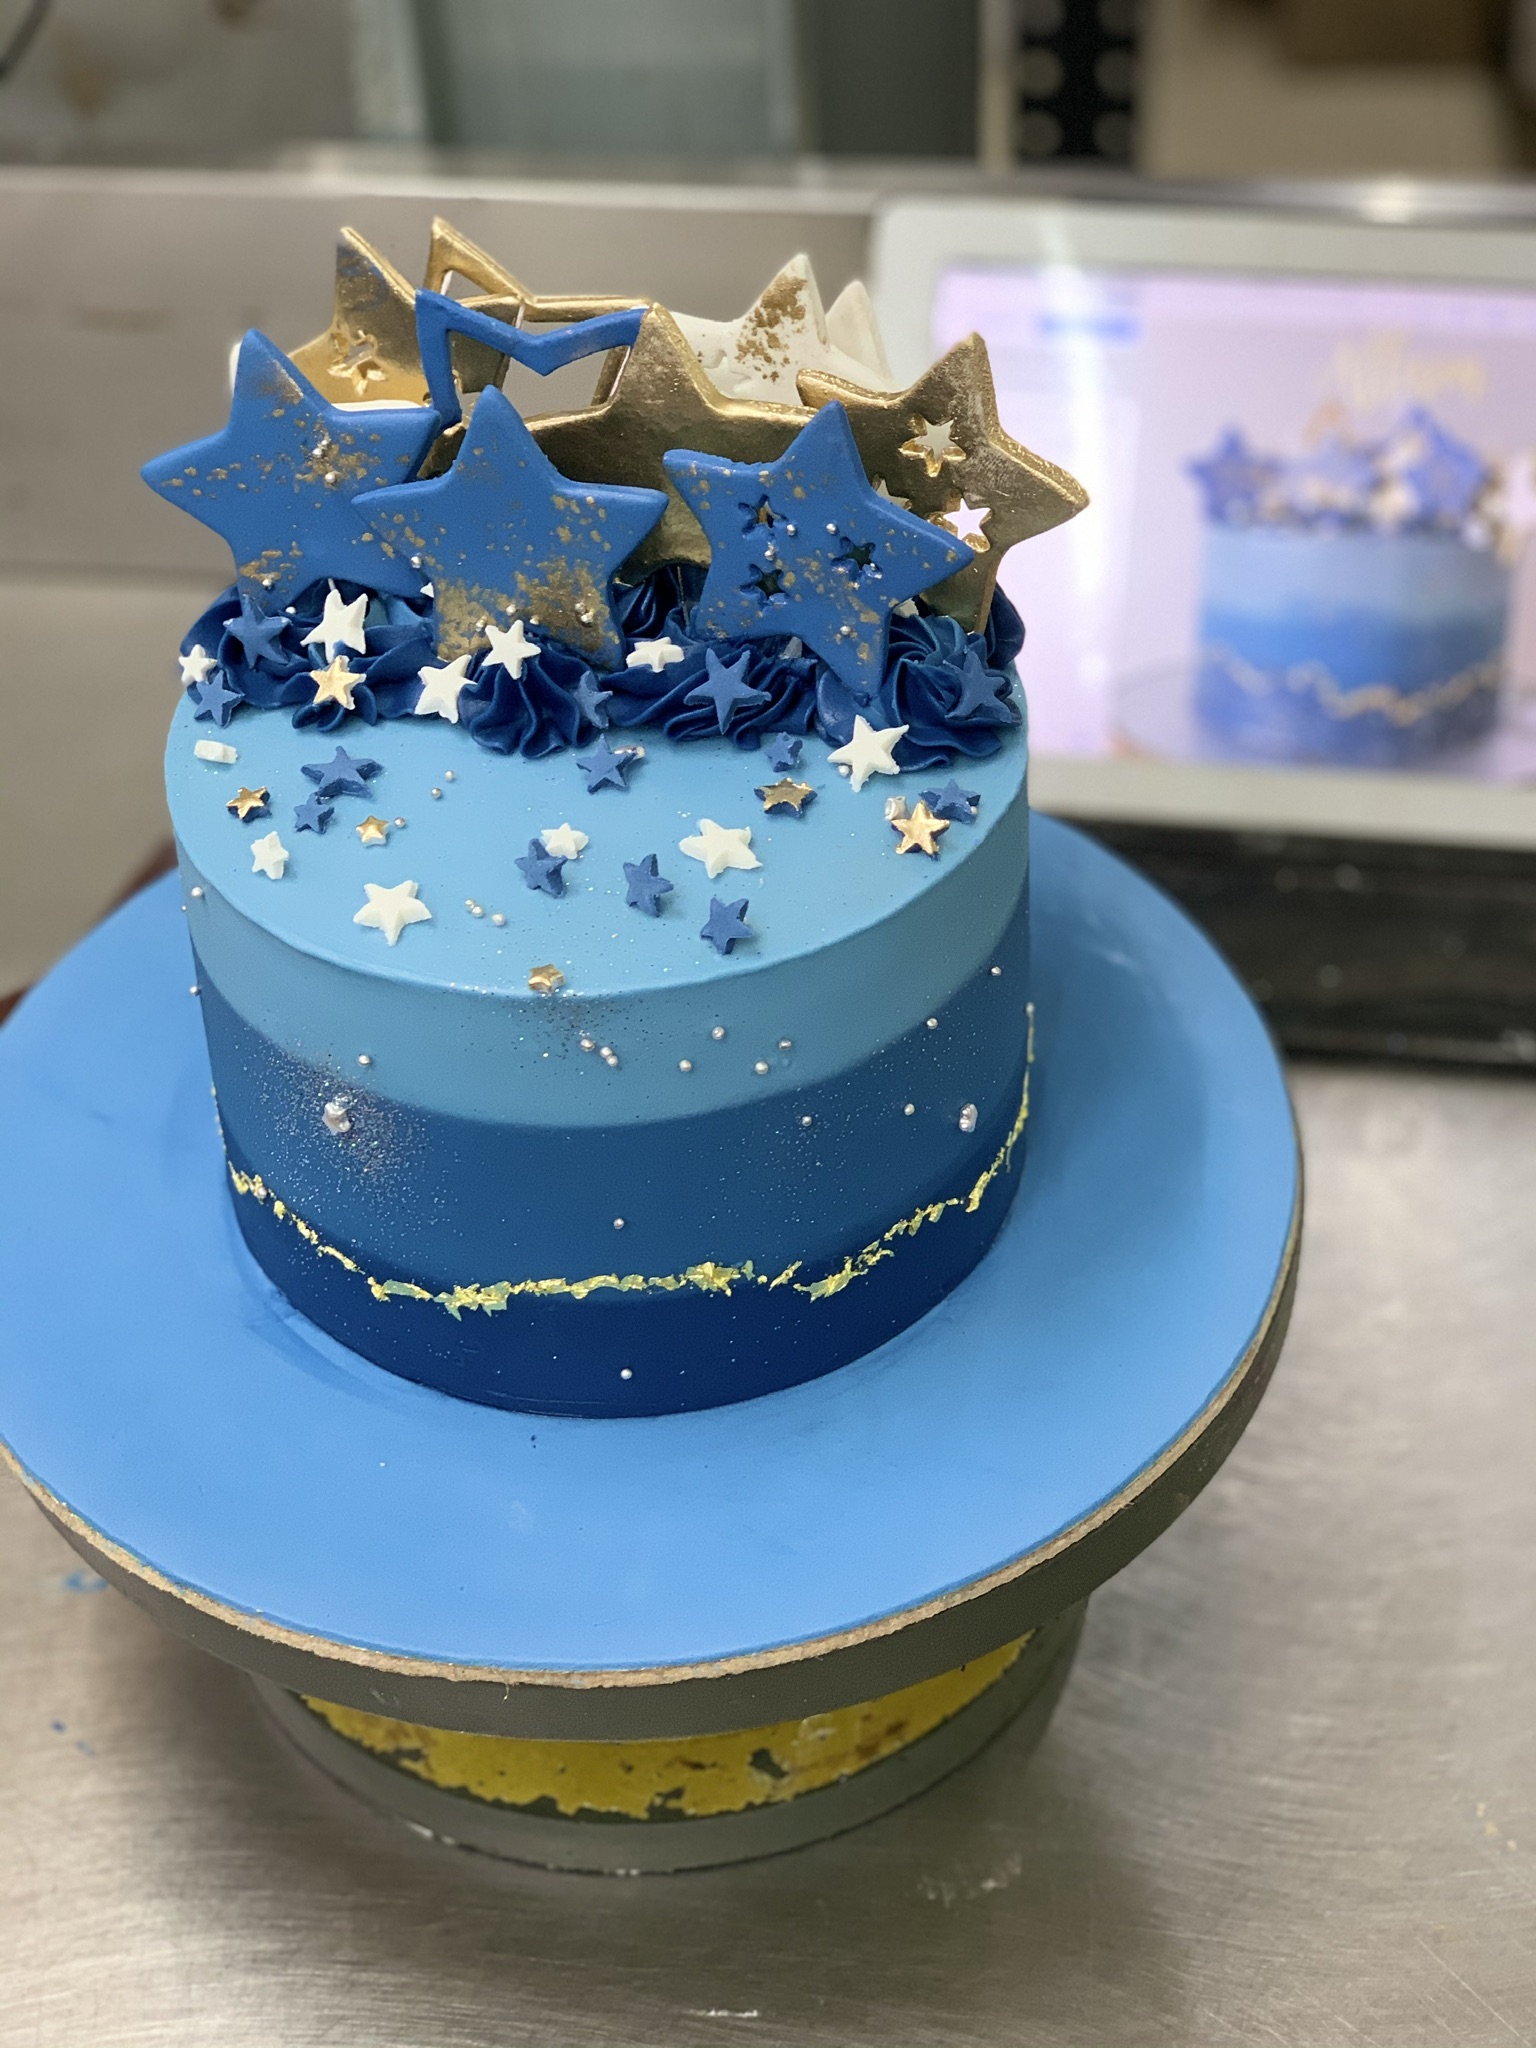 1st Birthday Cakes | 1st Birthday Cake Designs | Sydney